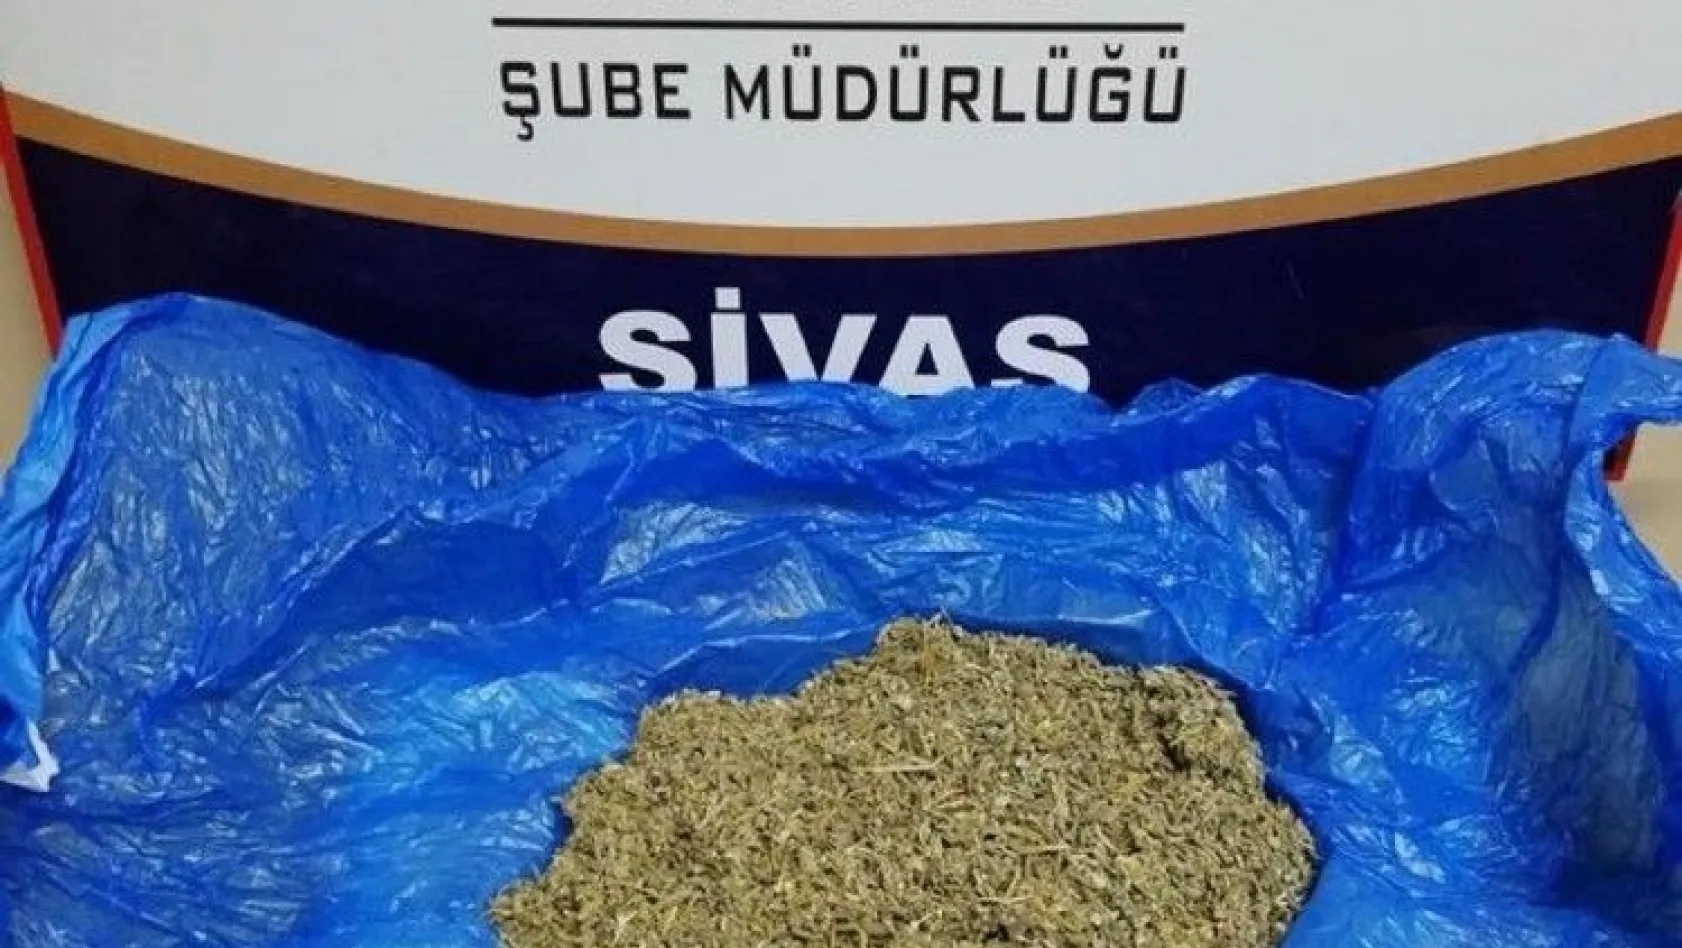 Sivas'ta uyuşturucu operasyonları: 4 tutuklama
